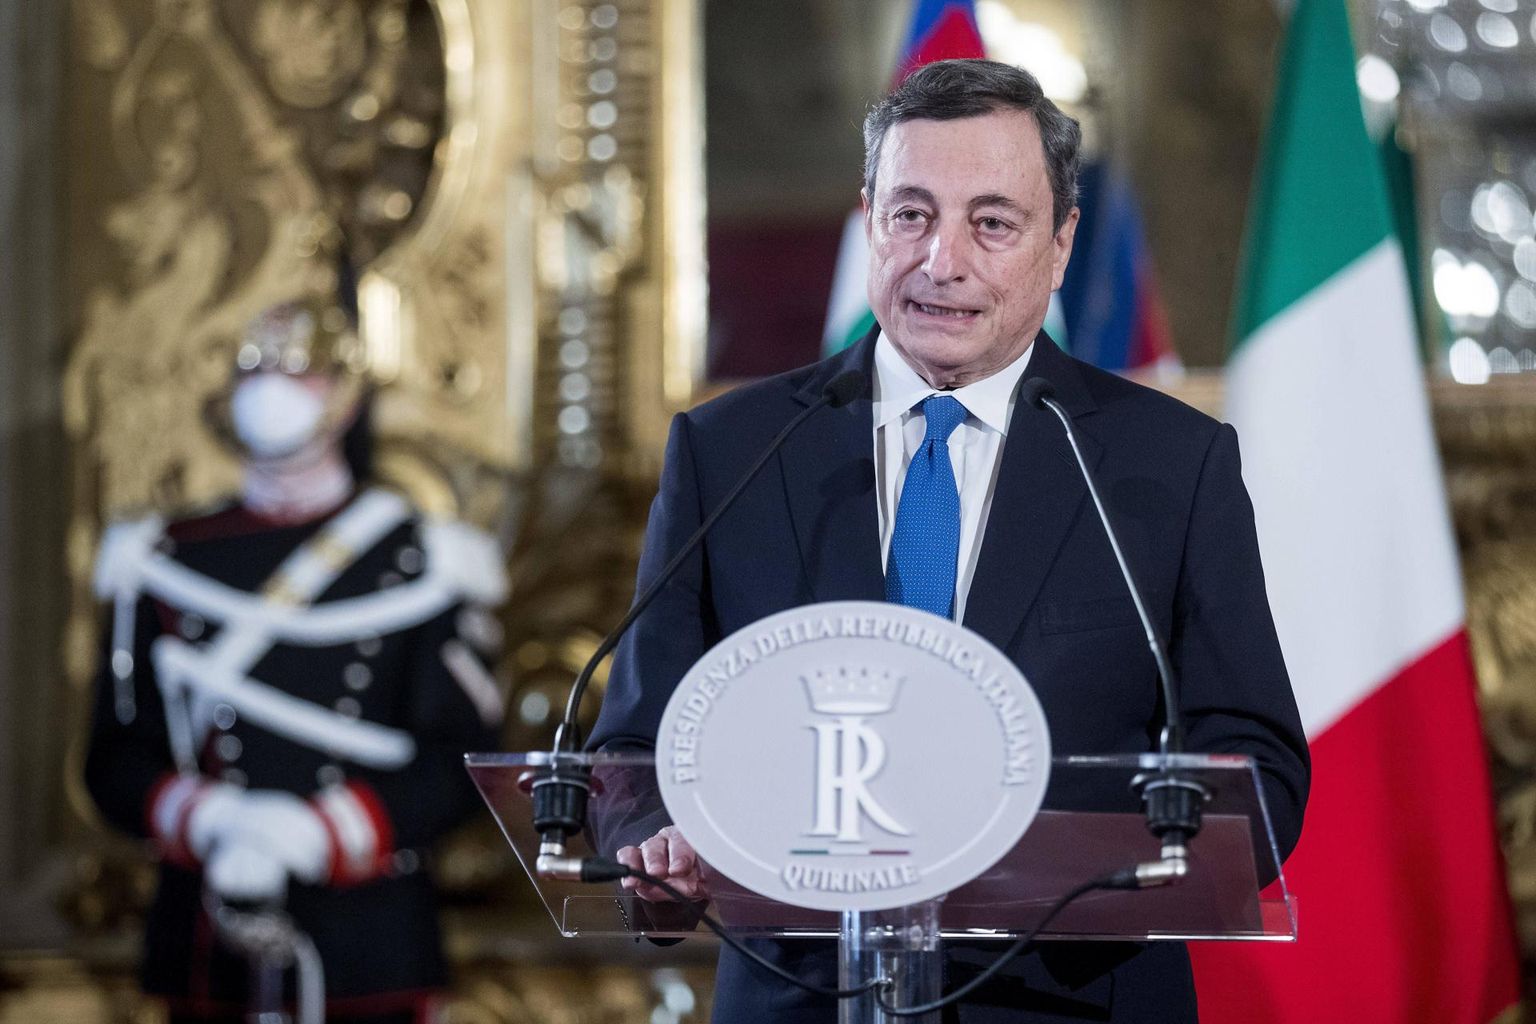 Mario Draghi soostus võtma enda kanda Itaalia peaministri rolli ja moodustama tehnokraatlikku valitsust, kuid ametis edukaks osutumiseks peab ta õppima navigeerima raskesti mõistetaval Itaalia poliitmaastikul. 